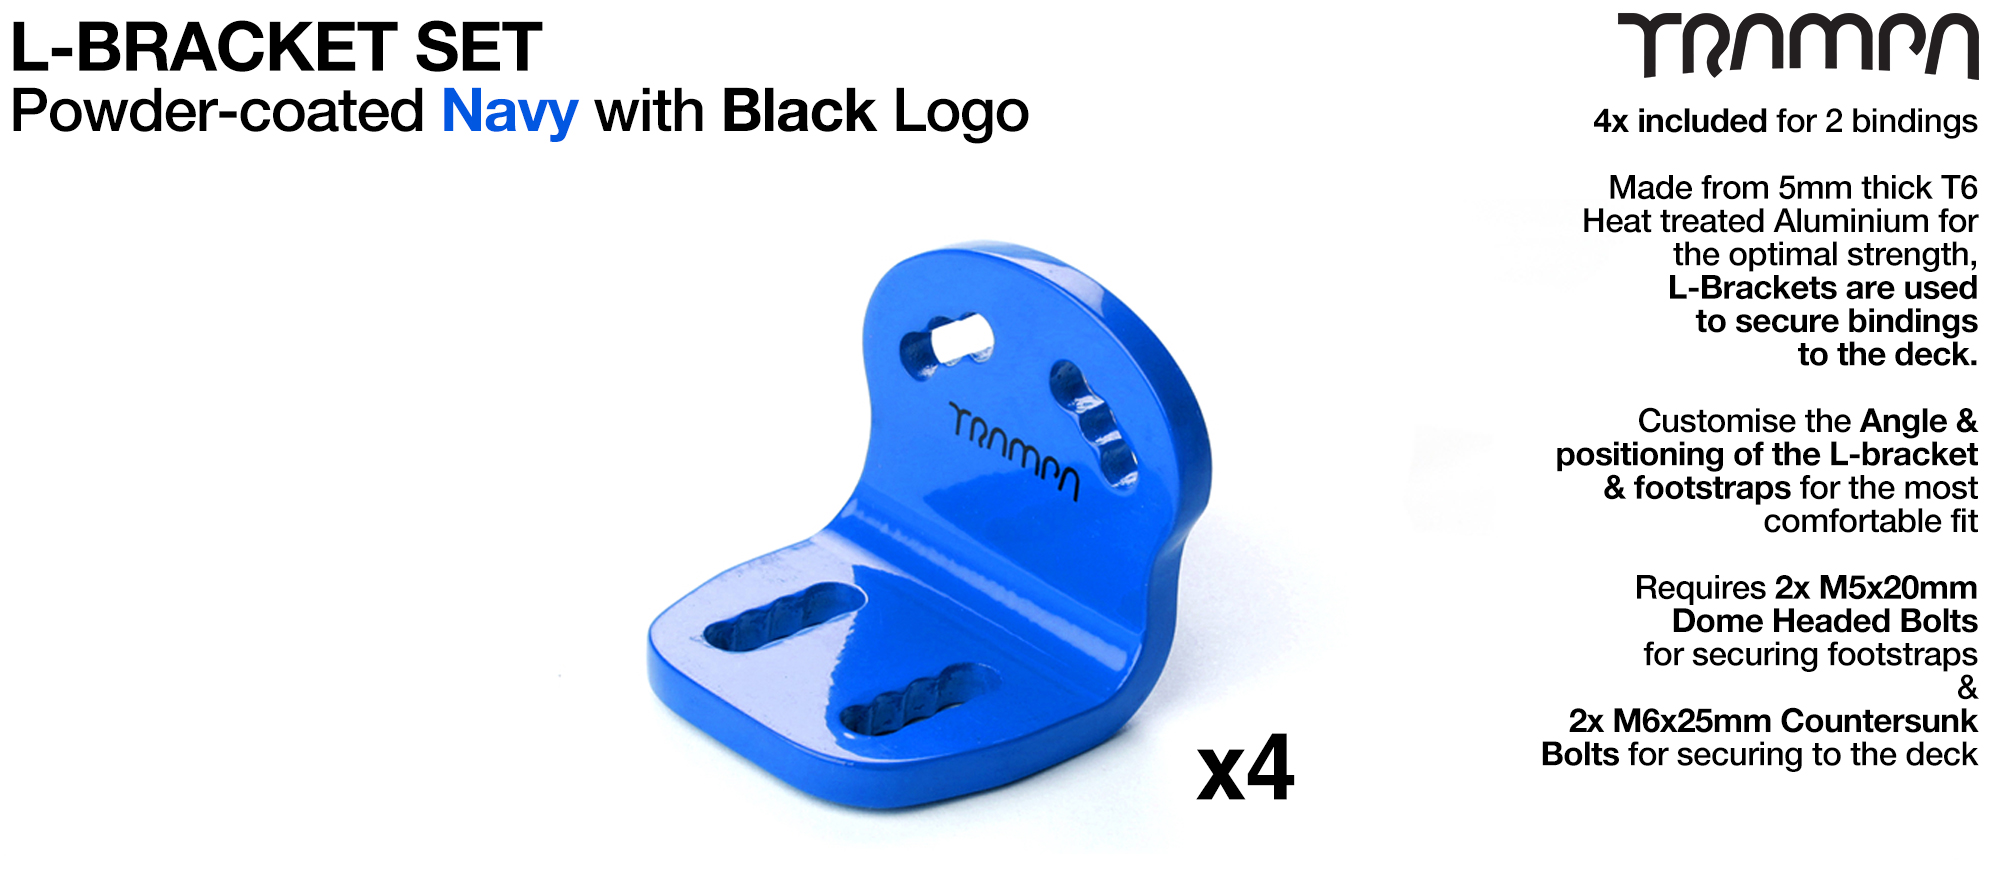 L Bracket - Powder-Coated NAVY with BLACK logo x4 